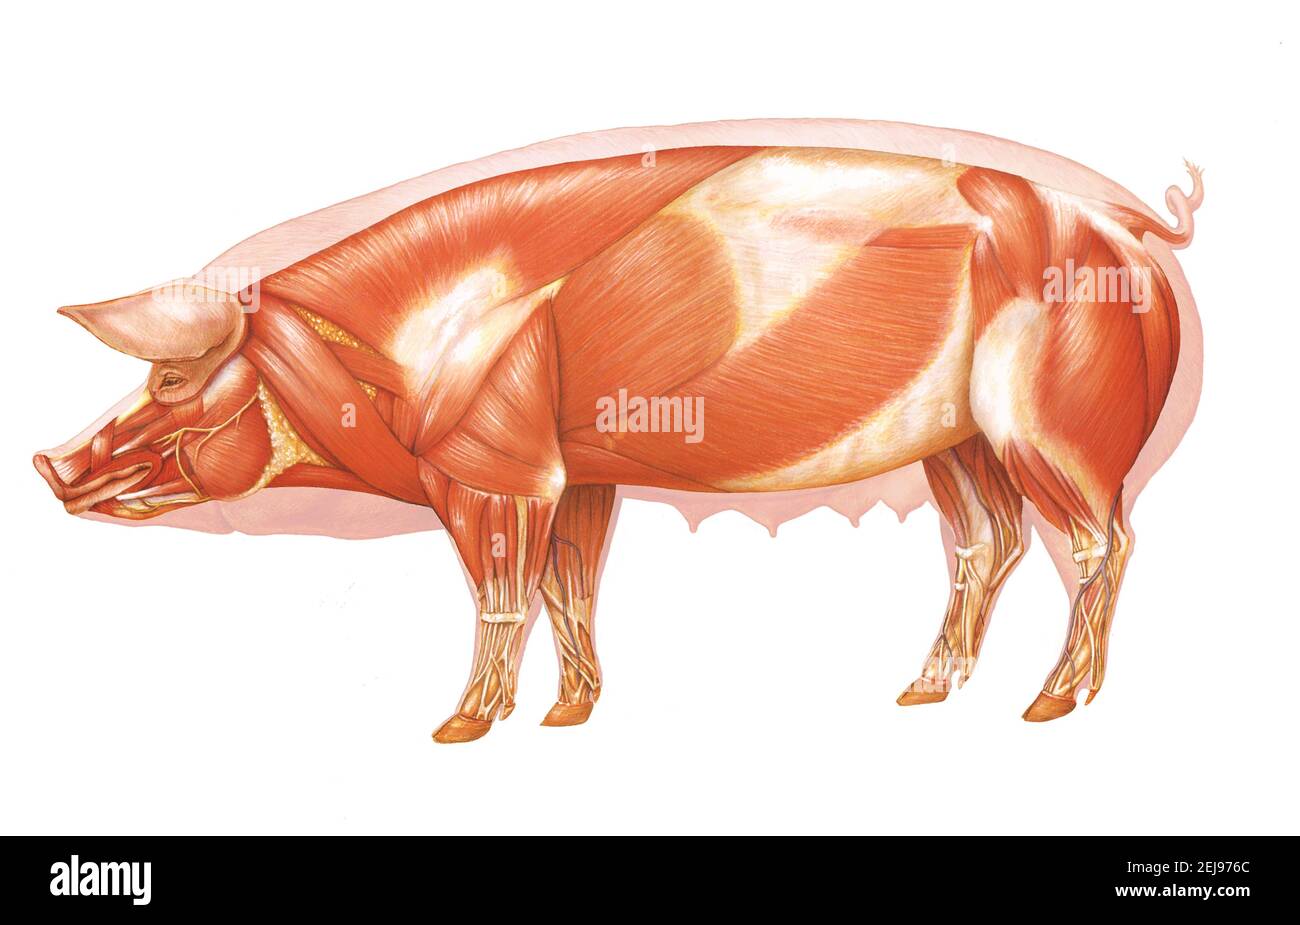 Anatomie des Schweins, zeichnen Stockfoto